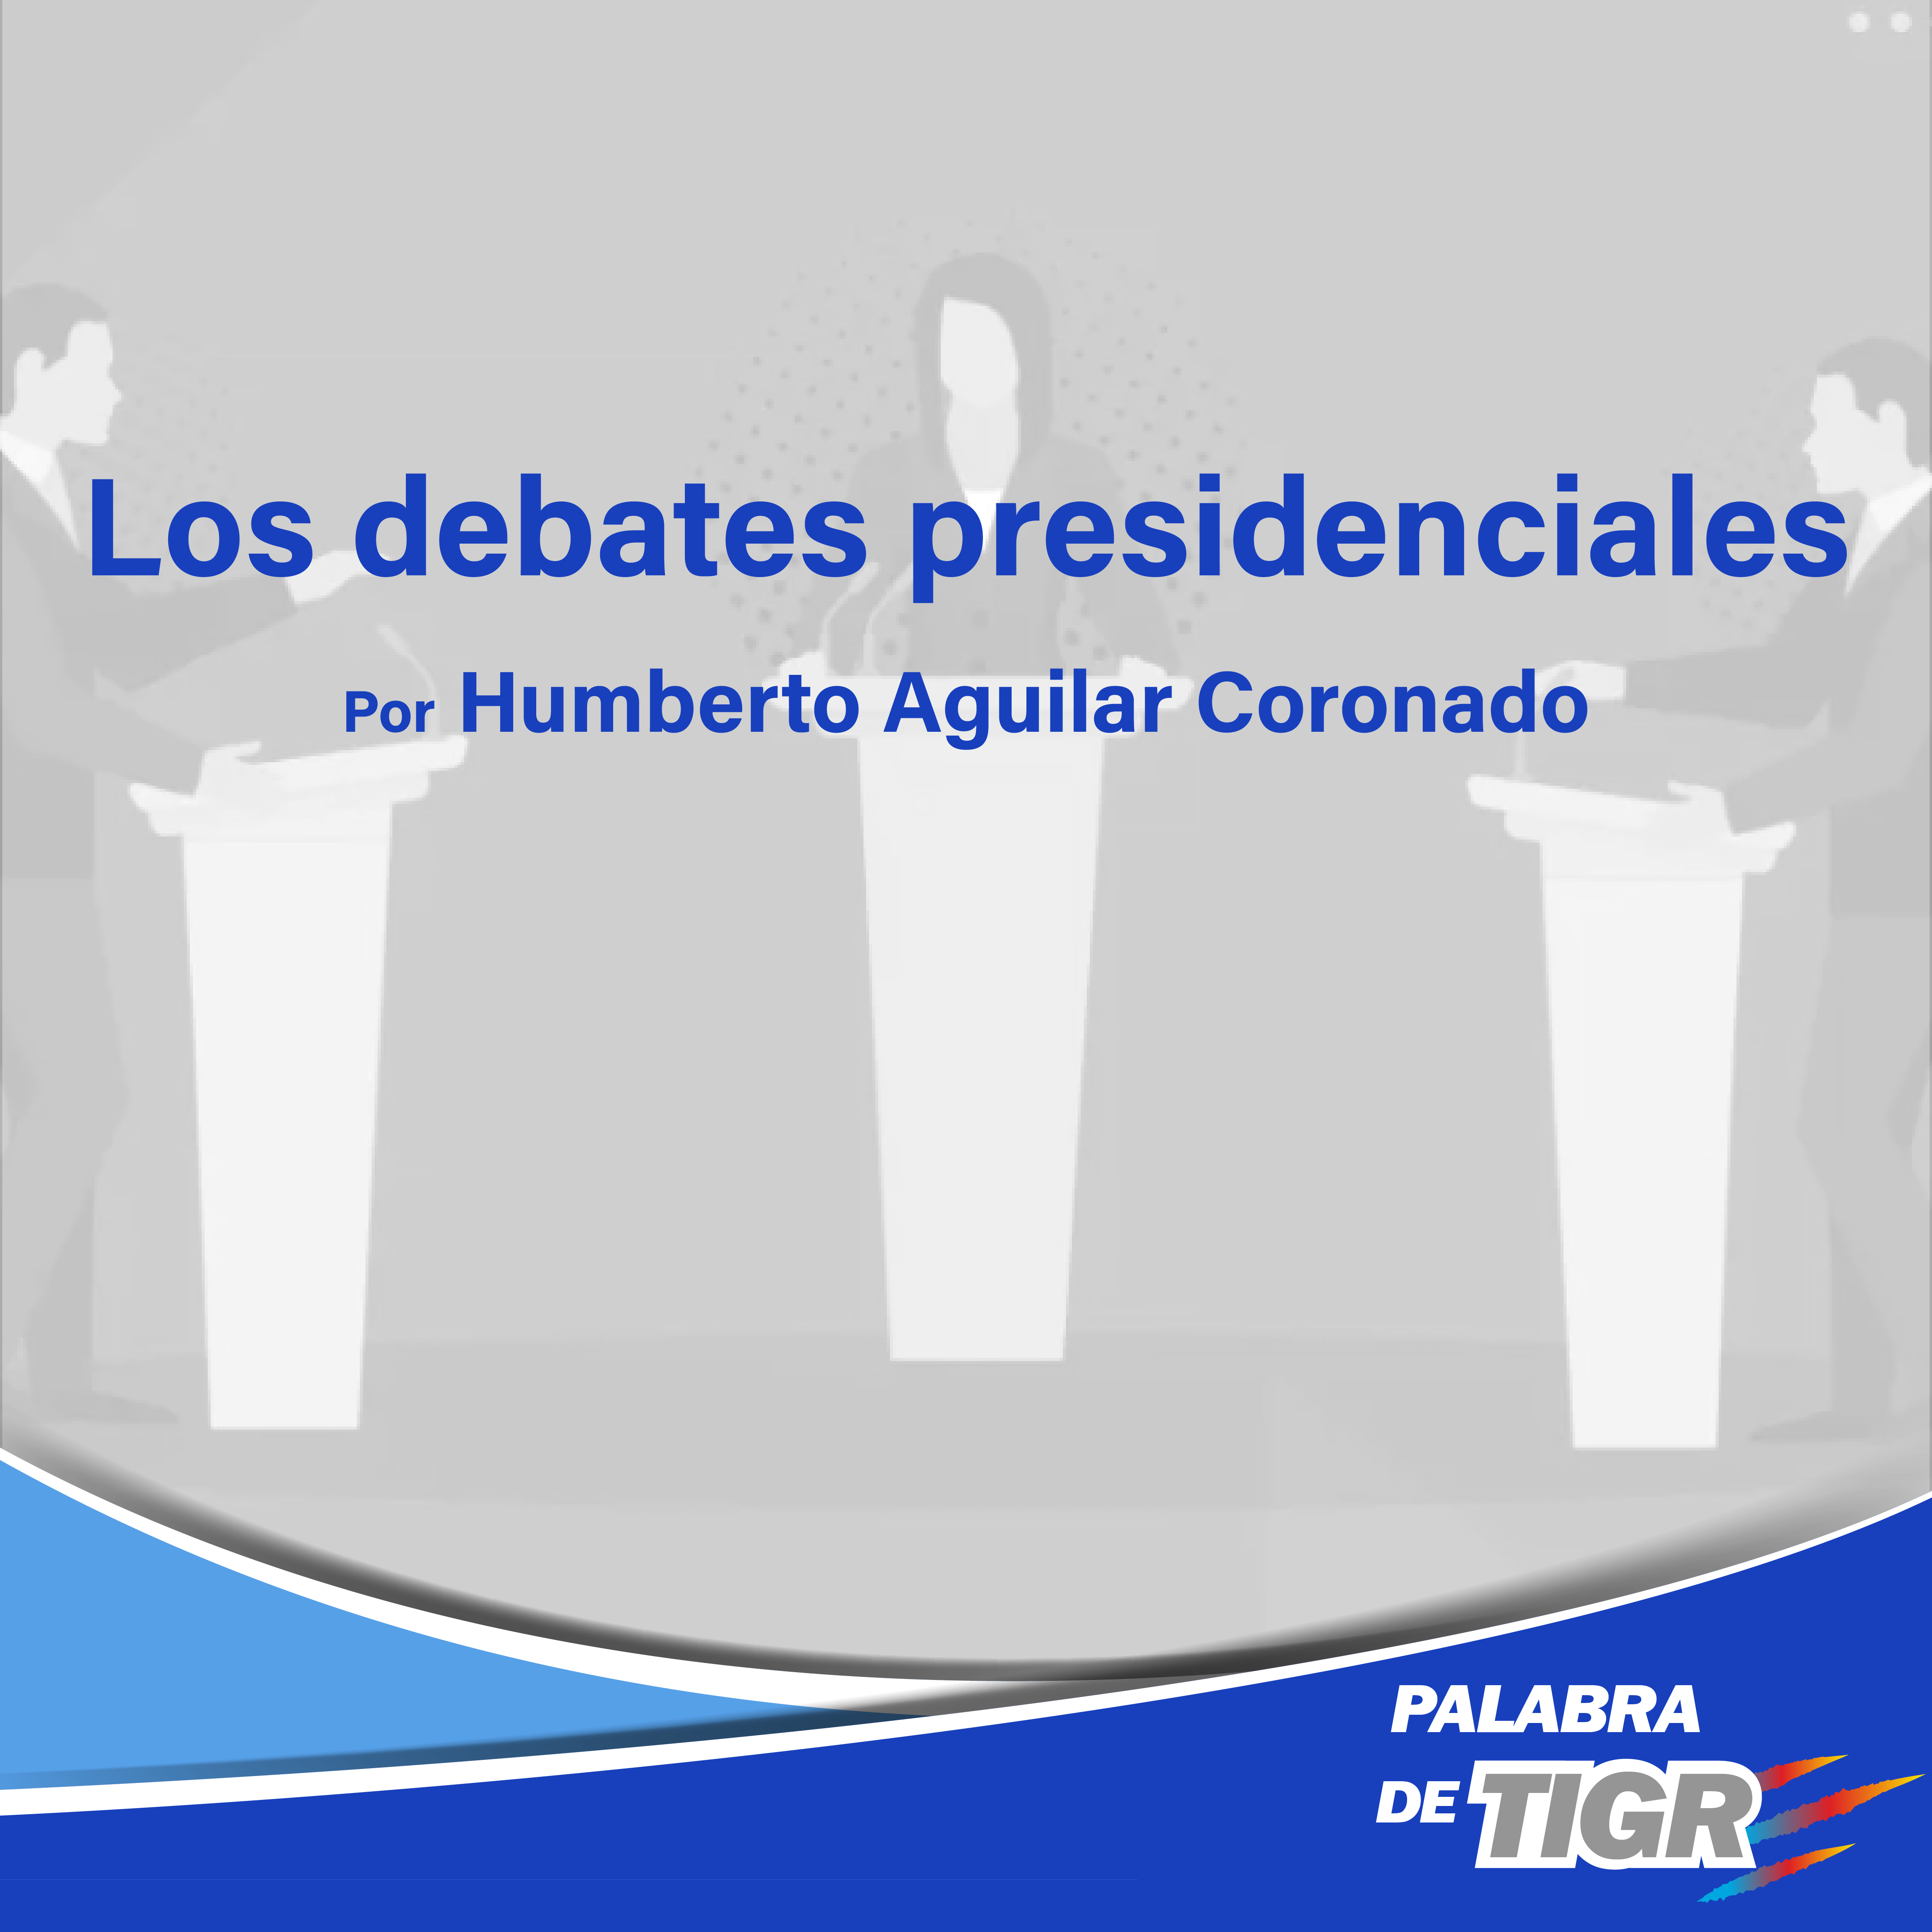 Los debates presidenciales